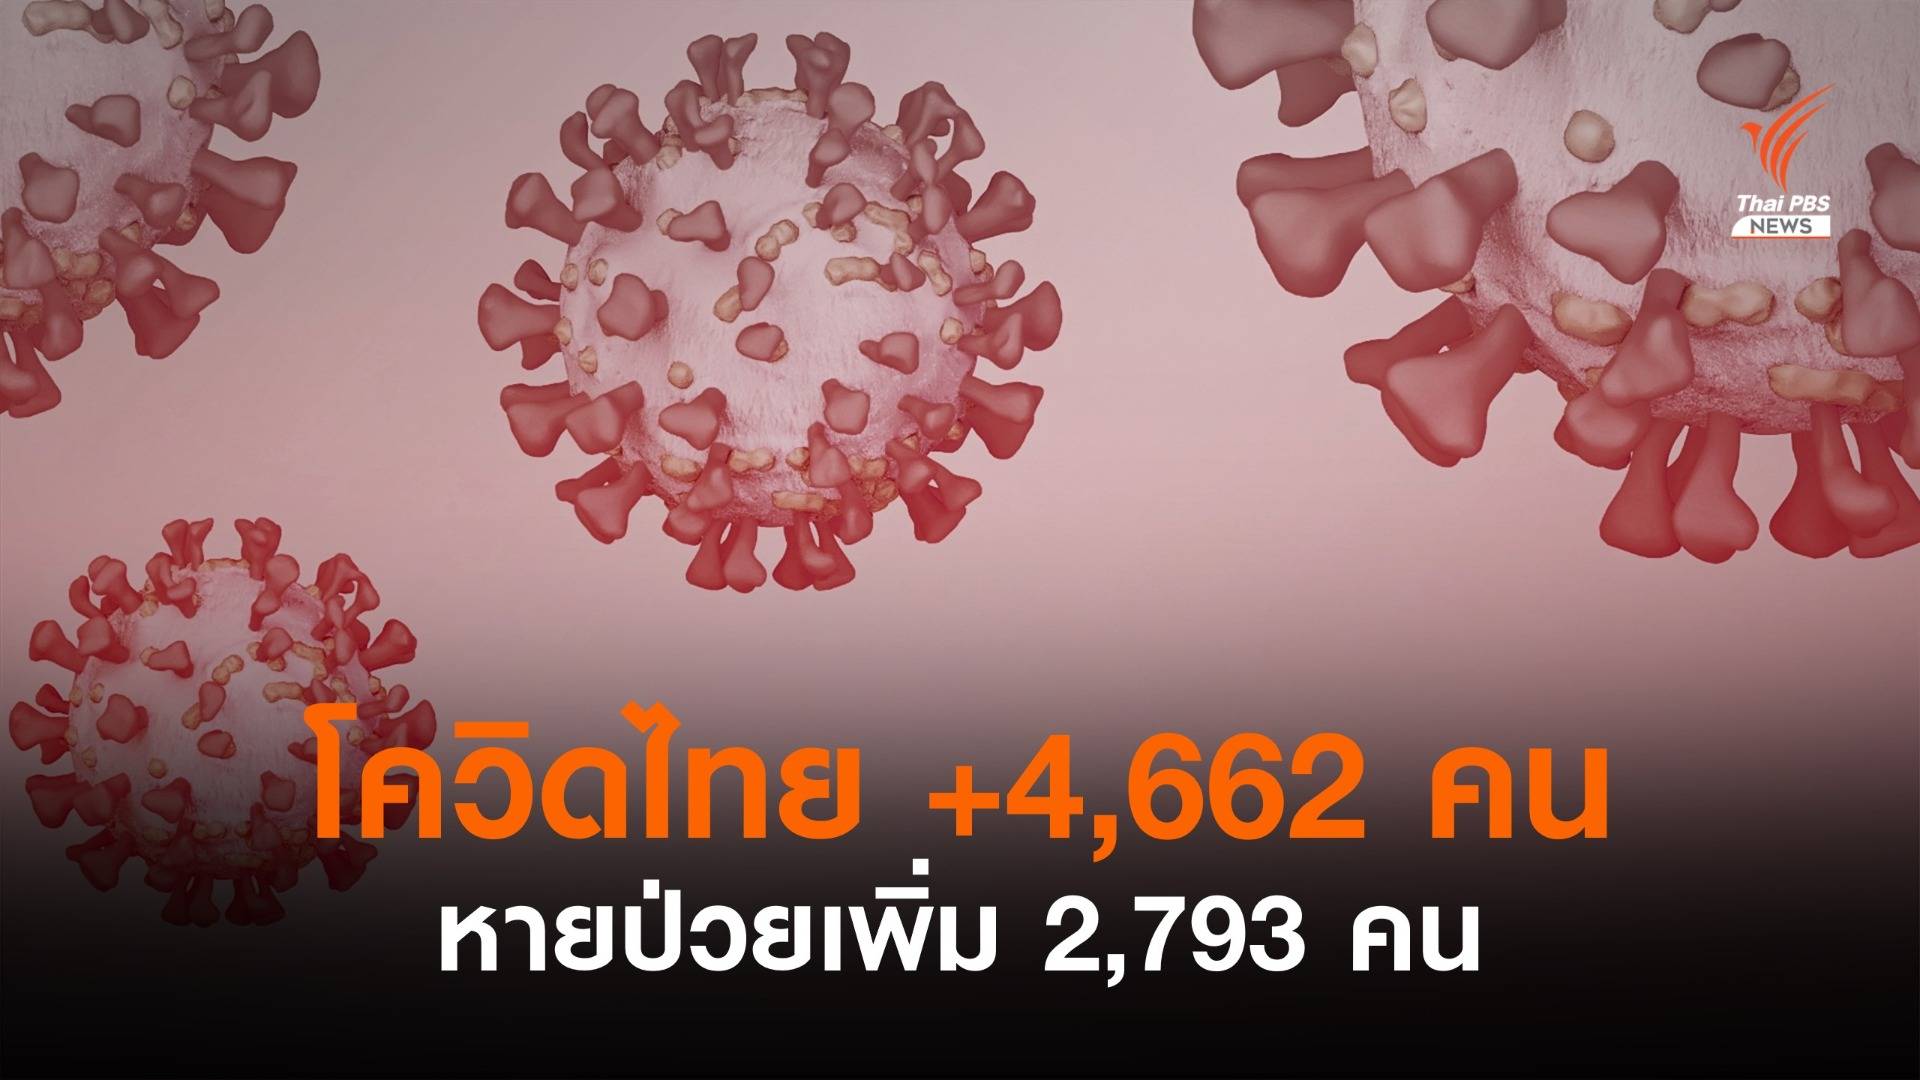 ไทยป่วยโควิดรายวันเพิ่ม 4,662 คน หายป่วย 2,793 คน